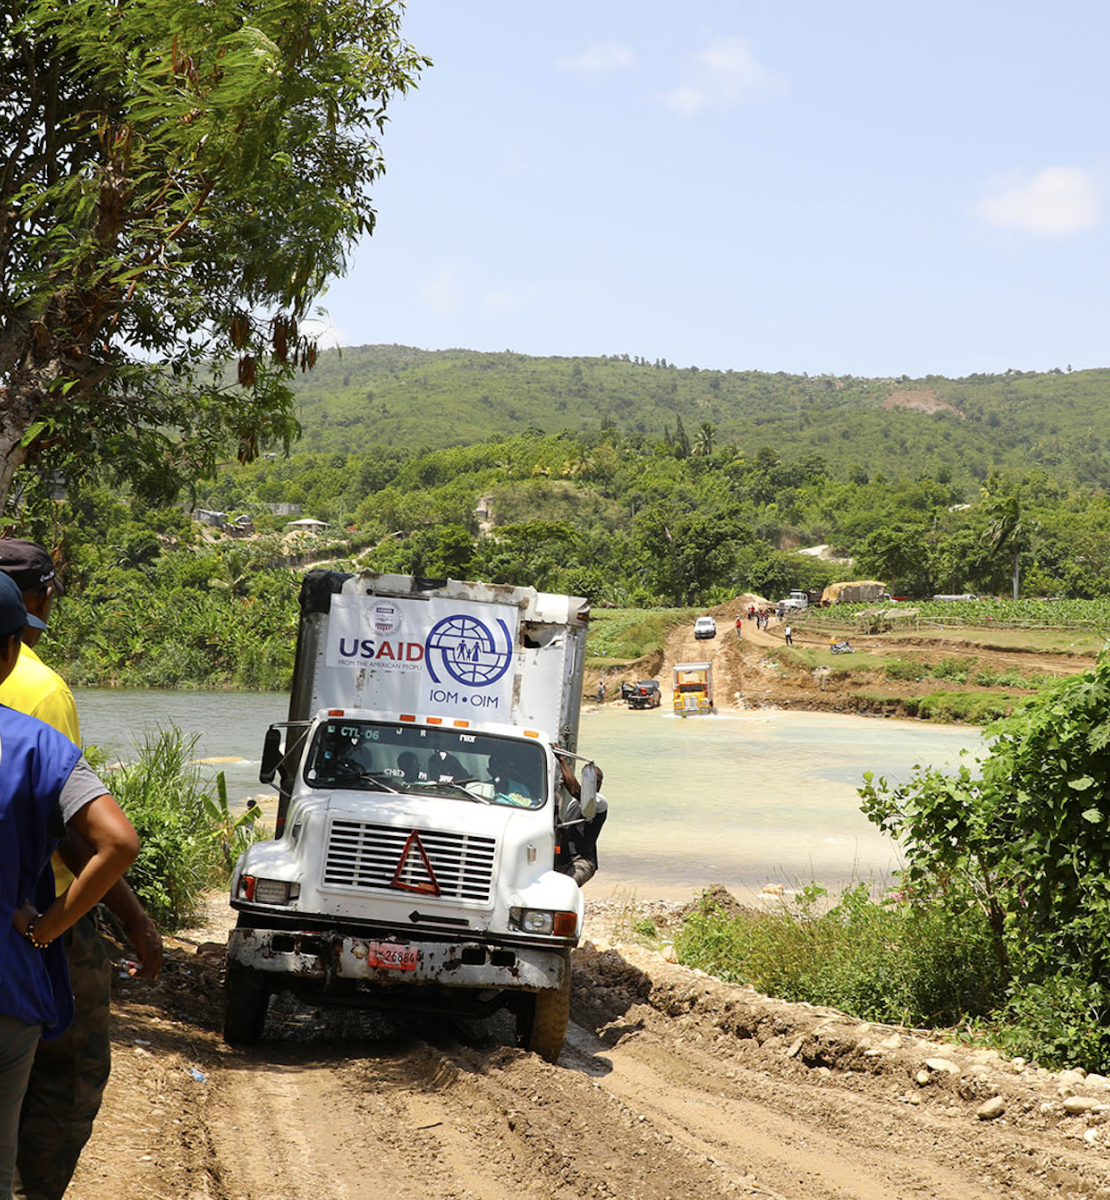 Los trabajadores de la Organización Internacional para las Migraciones se sitúan a un lado de la carretera mientras un gran camión circula por el camino de tierra y los niños y niñas miran desde arriba de un montículo.